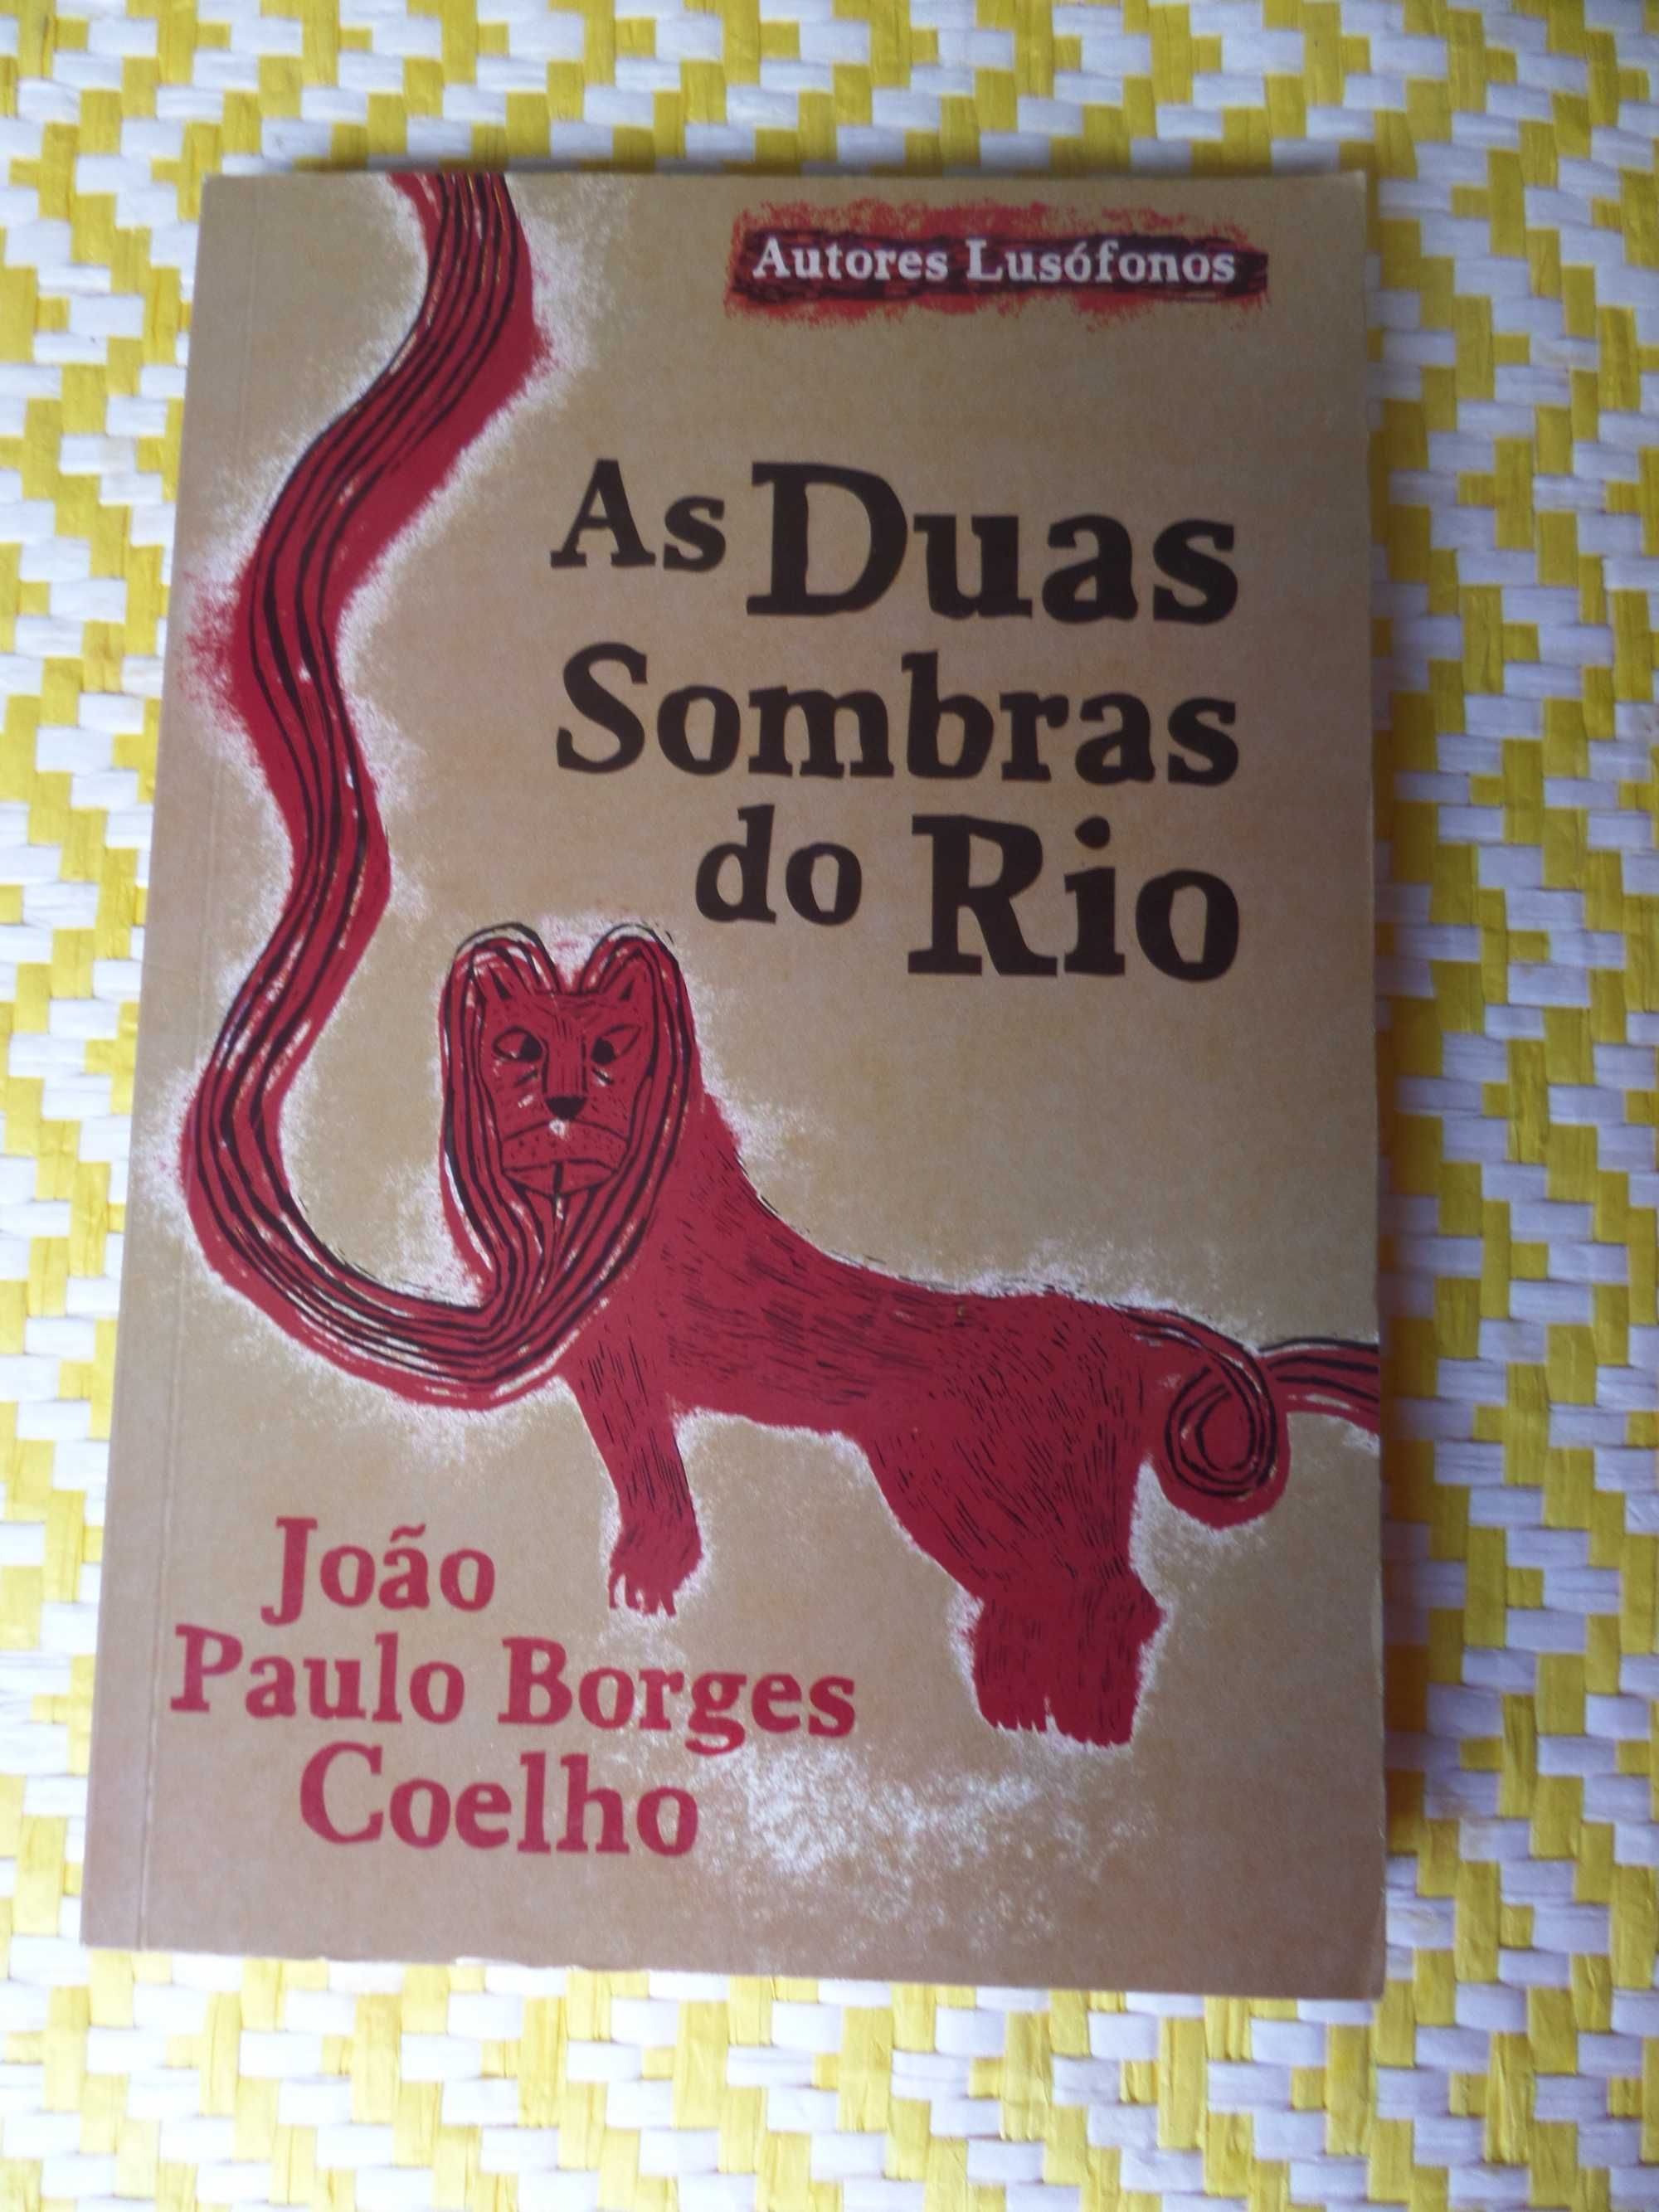 AS DUAS SOMBRAS DO RIO
de João Paulo Borges Coelho